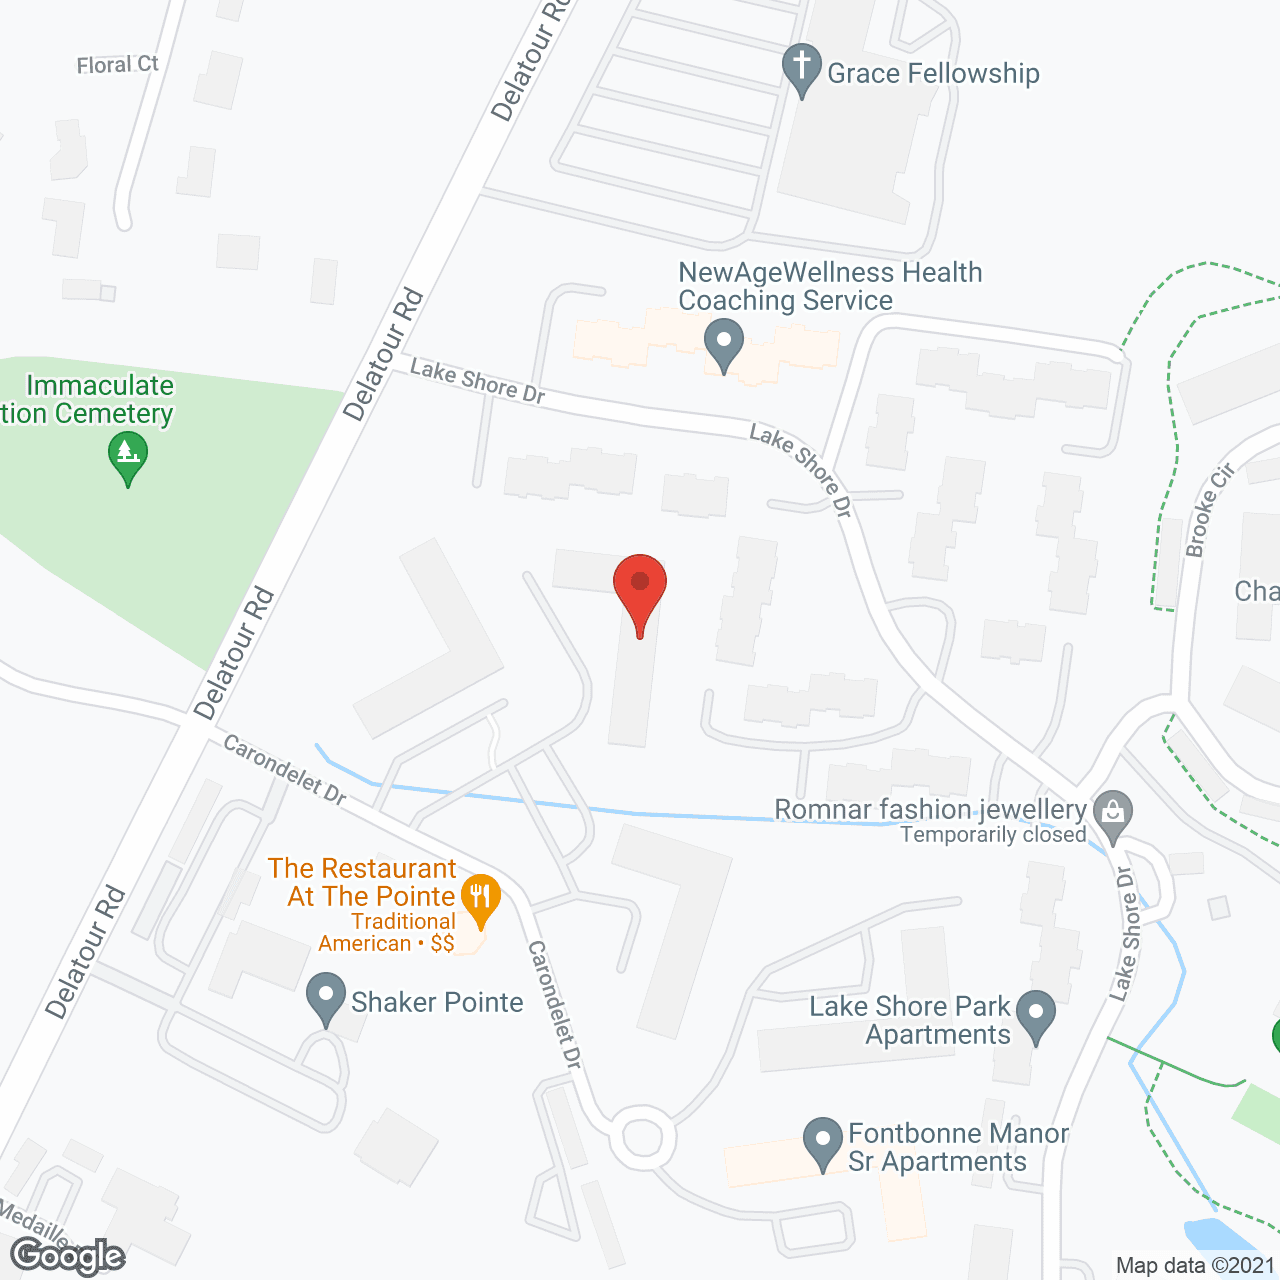 Cabrini Acres Senior Apartment in google map